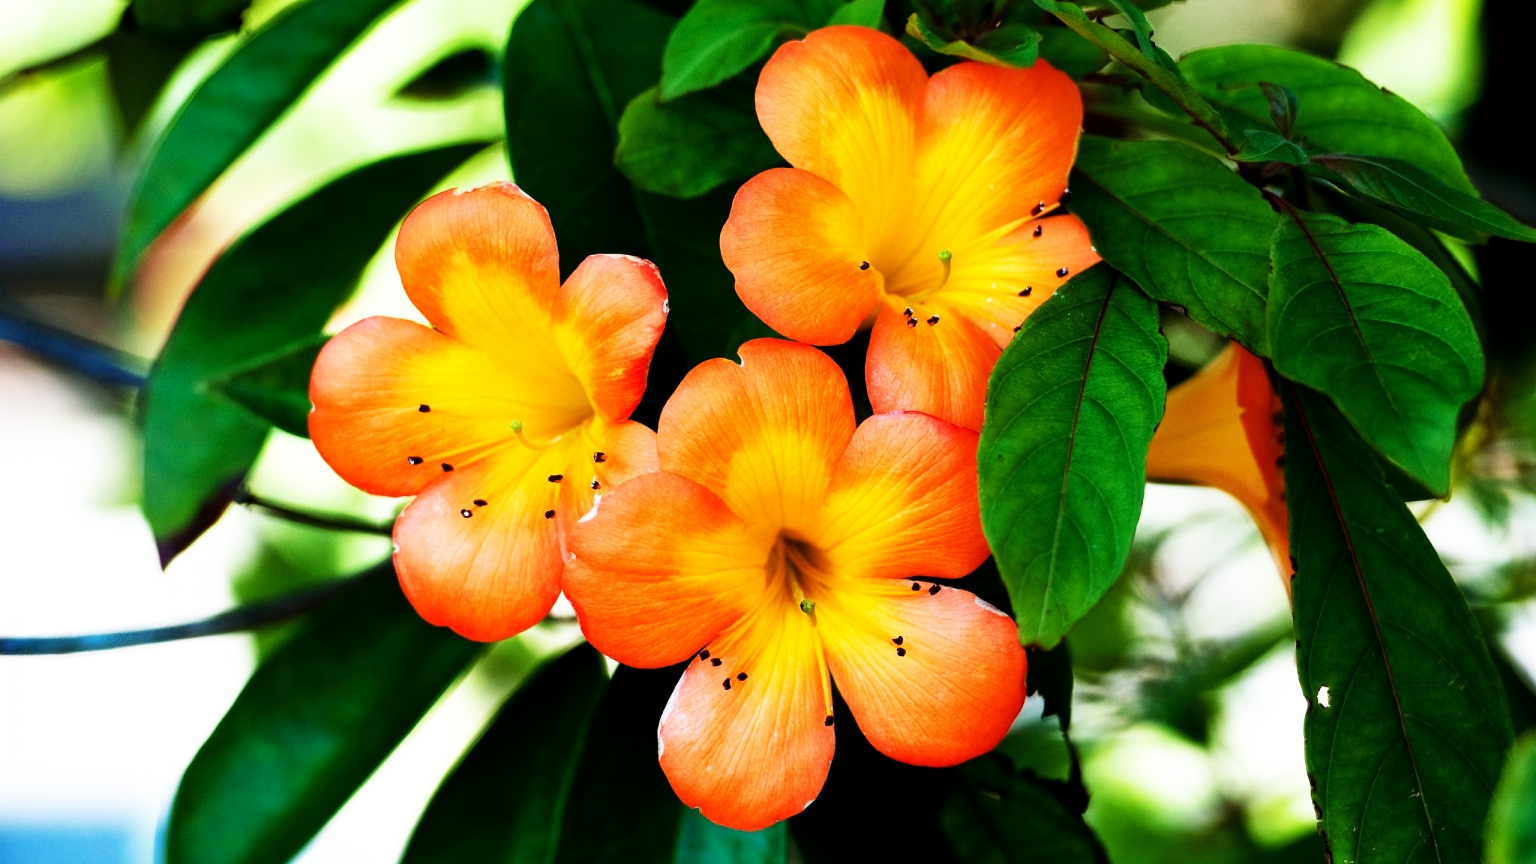 Spring Orange Flower for 1536 x 864 HDTV resolution